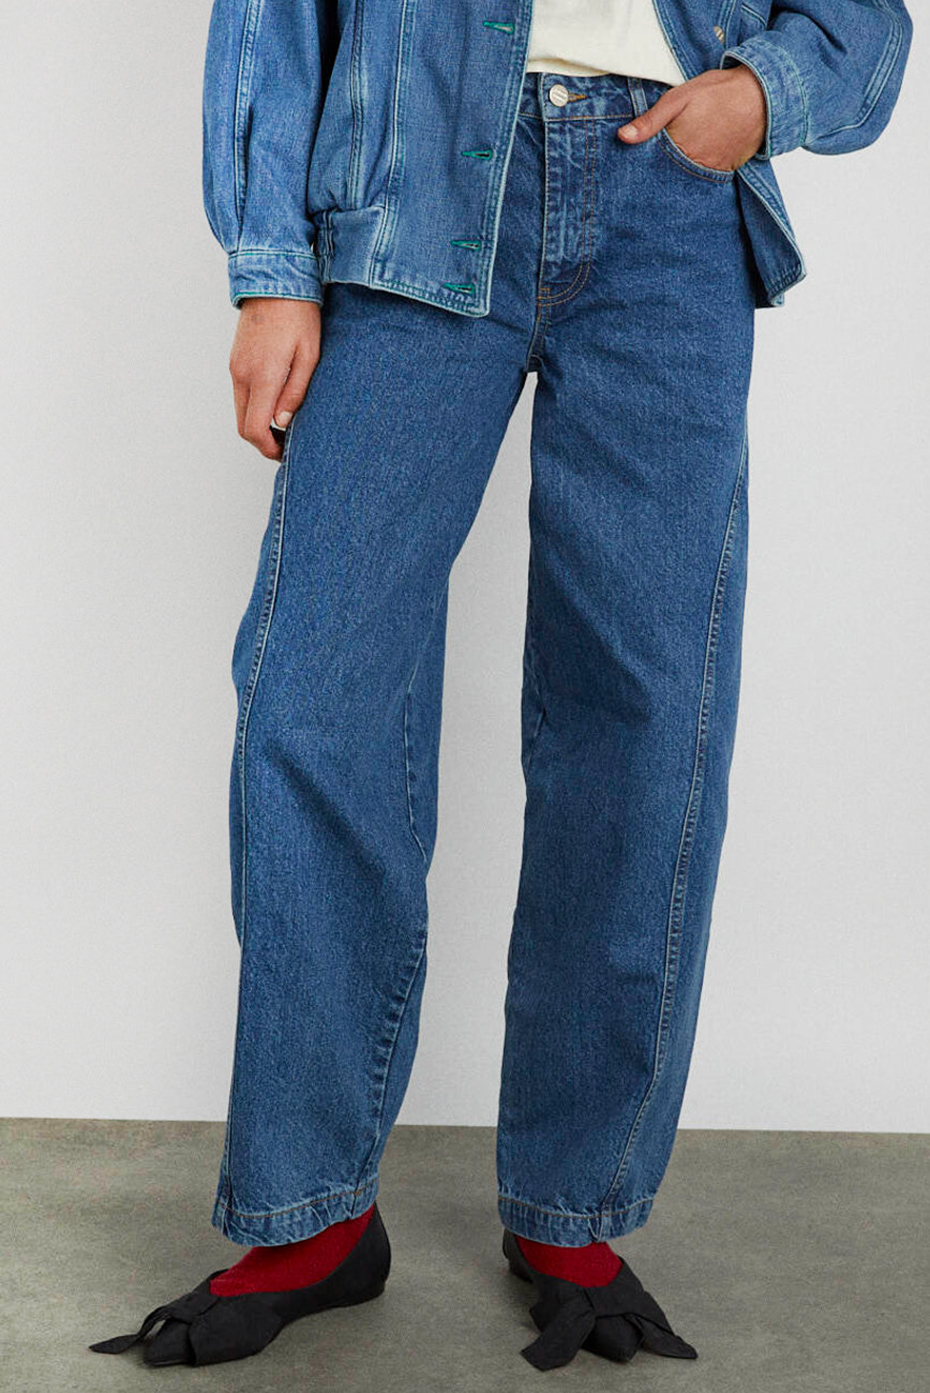 damson-madder-washed-blue-dion-jeans